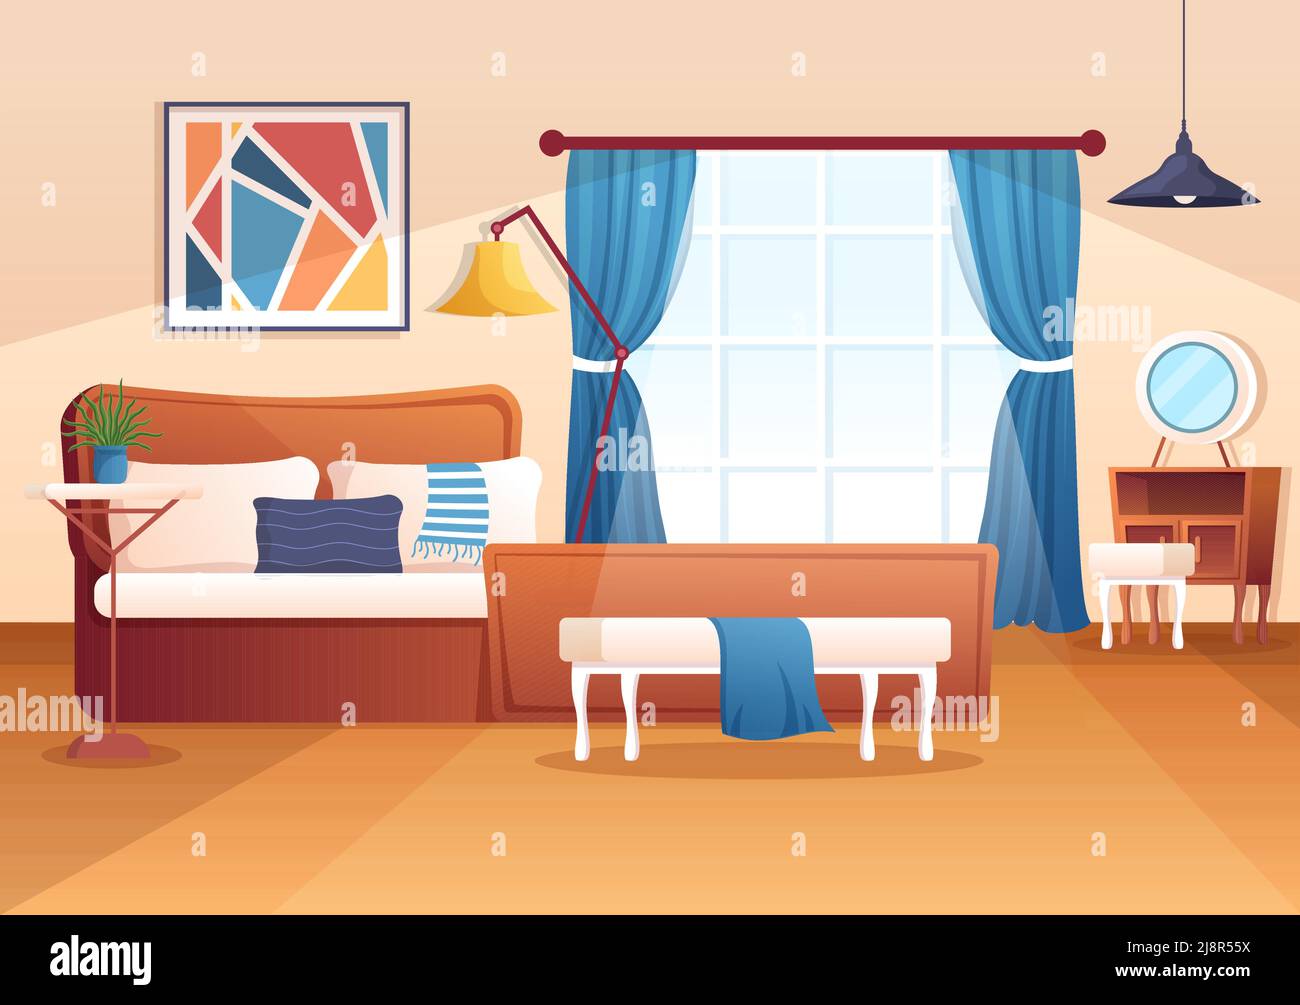 Accogliente camera da letto interno con mobili come il letto, armadio, Bedside Table, vaso, lampadario in stile moderno in Cartoon Vector Illustration Illustrazione Vettoriale